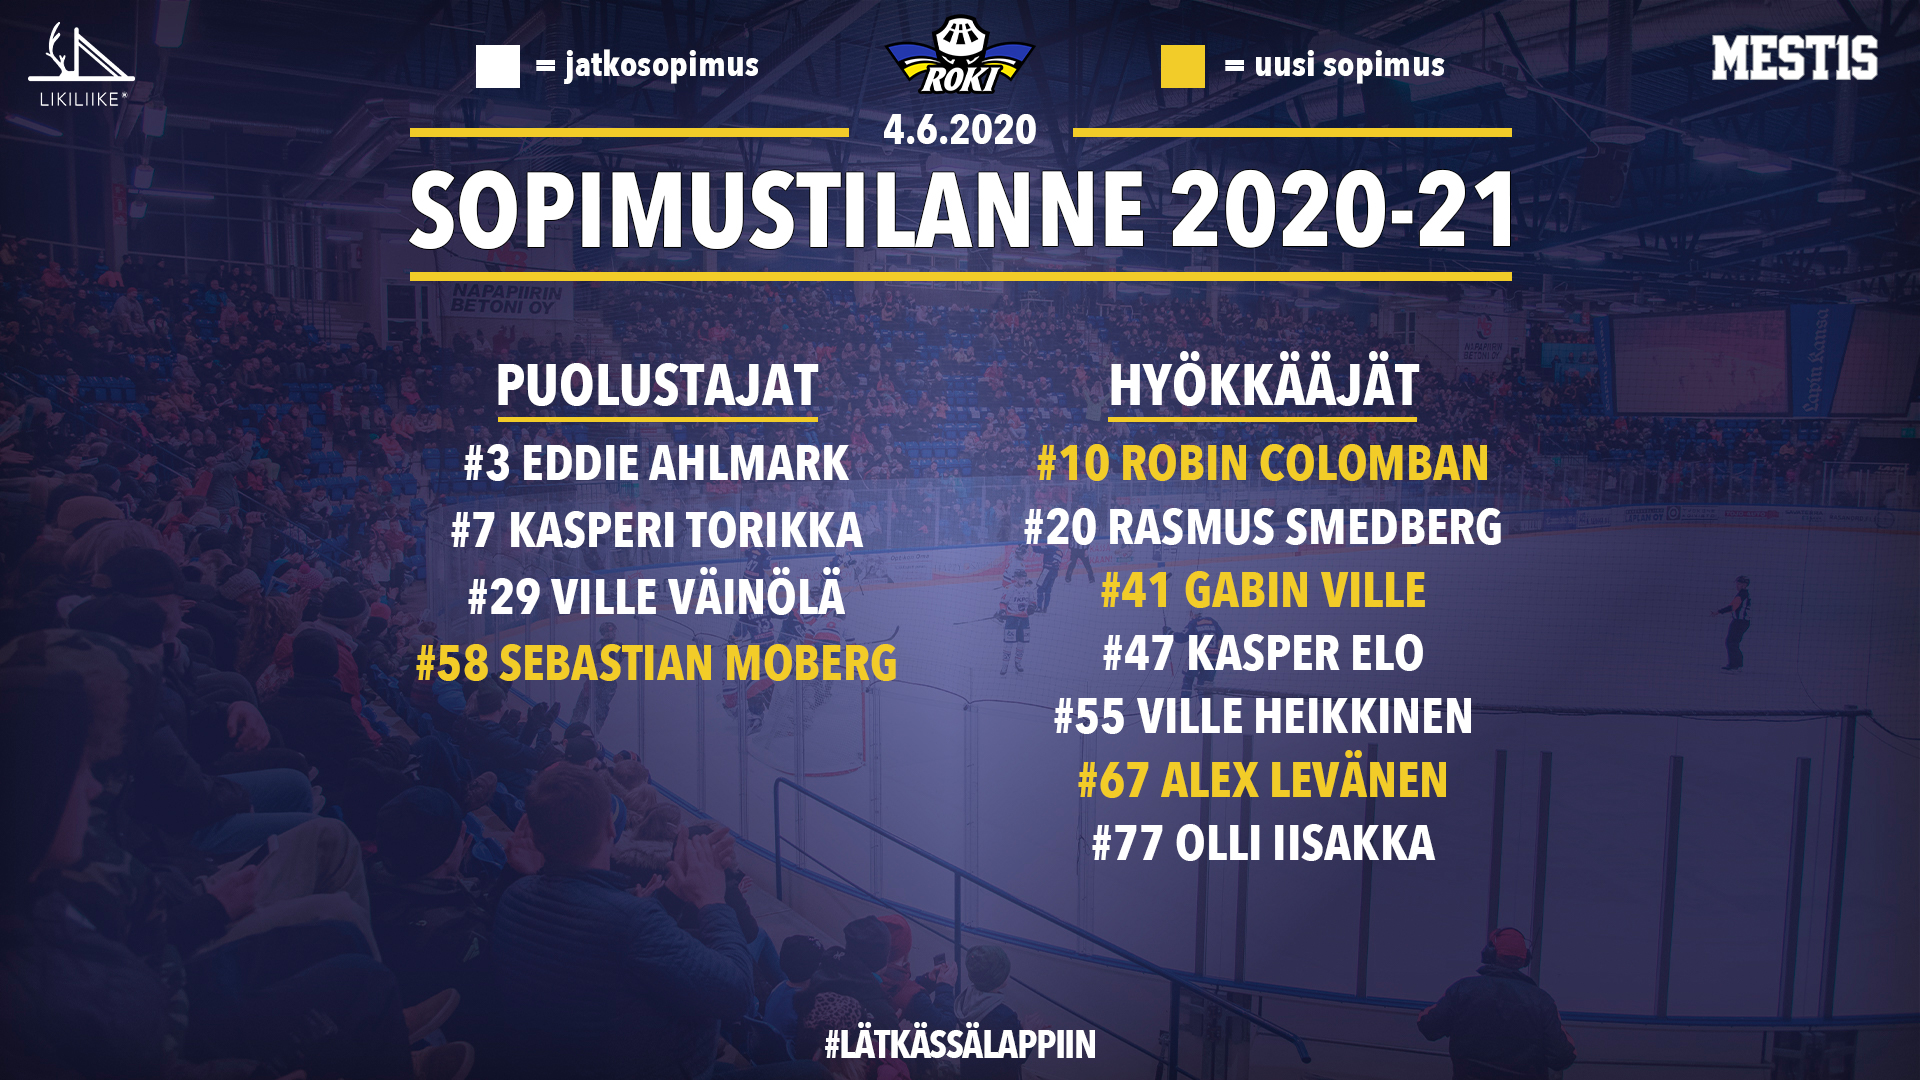 Sebastian Moberg ja Alex Levänen siirtyvät uusina pelaajina RoKiin